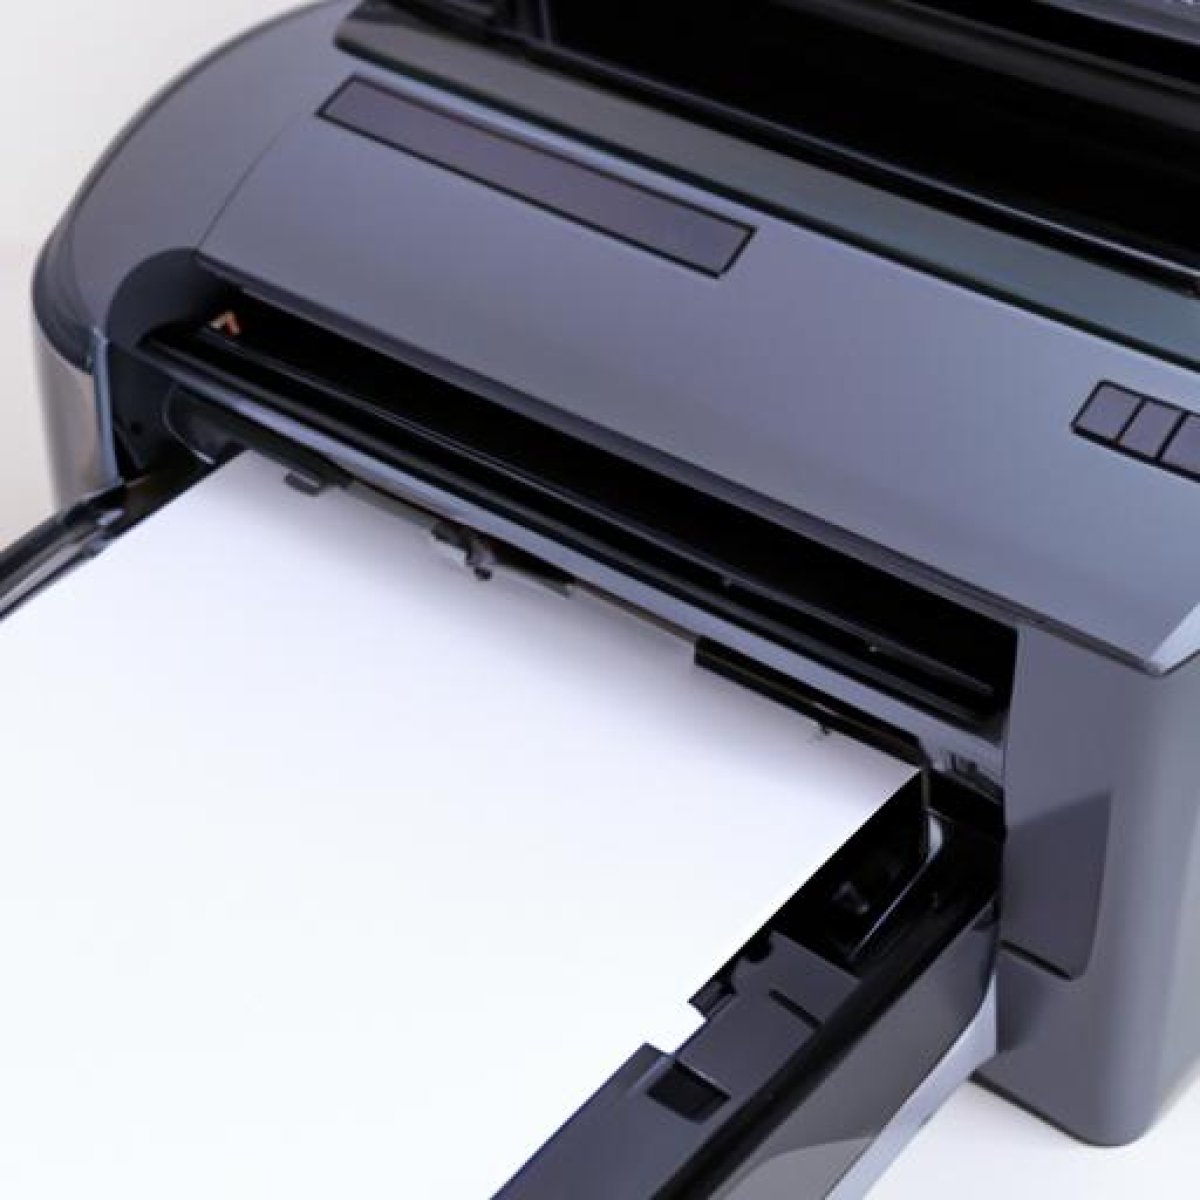 Mejor impresora multifuncion para casa